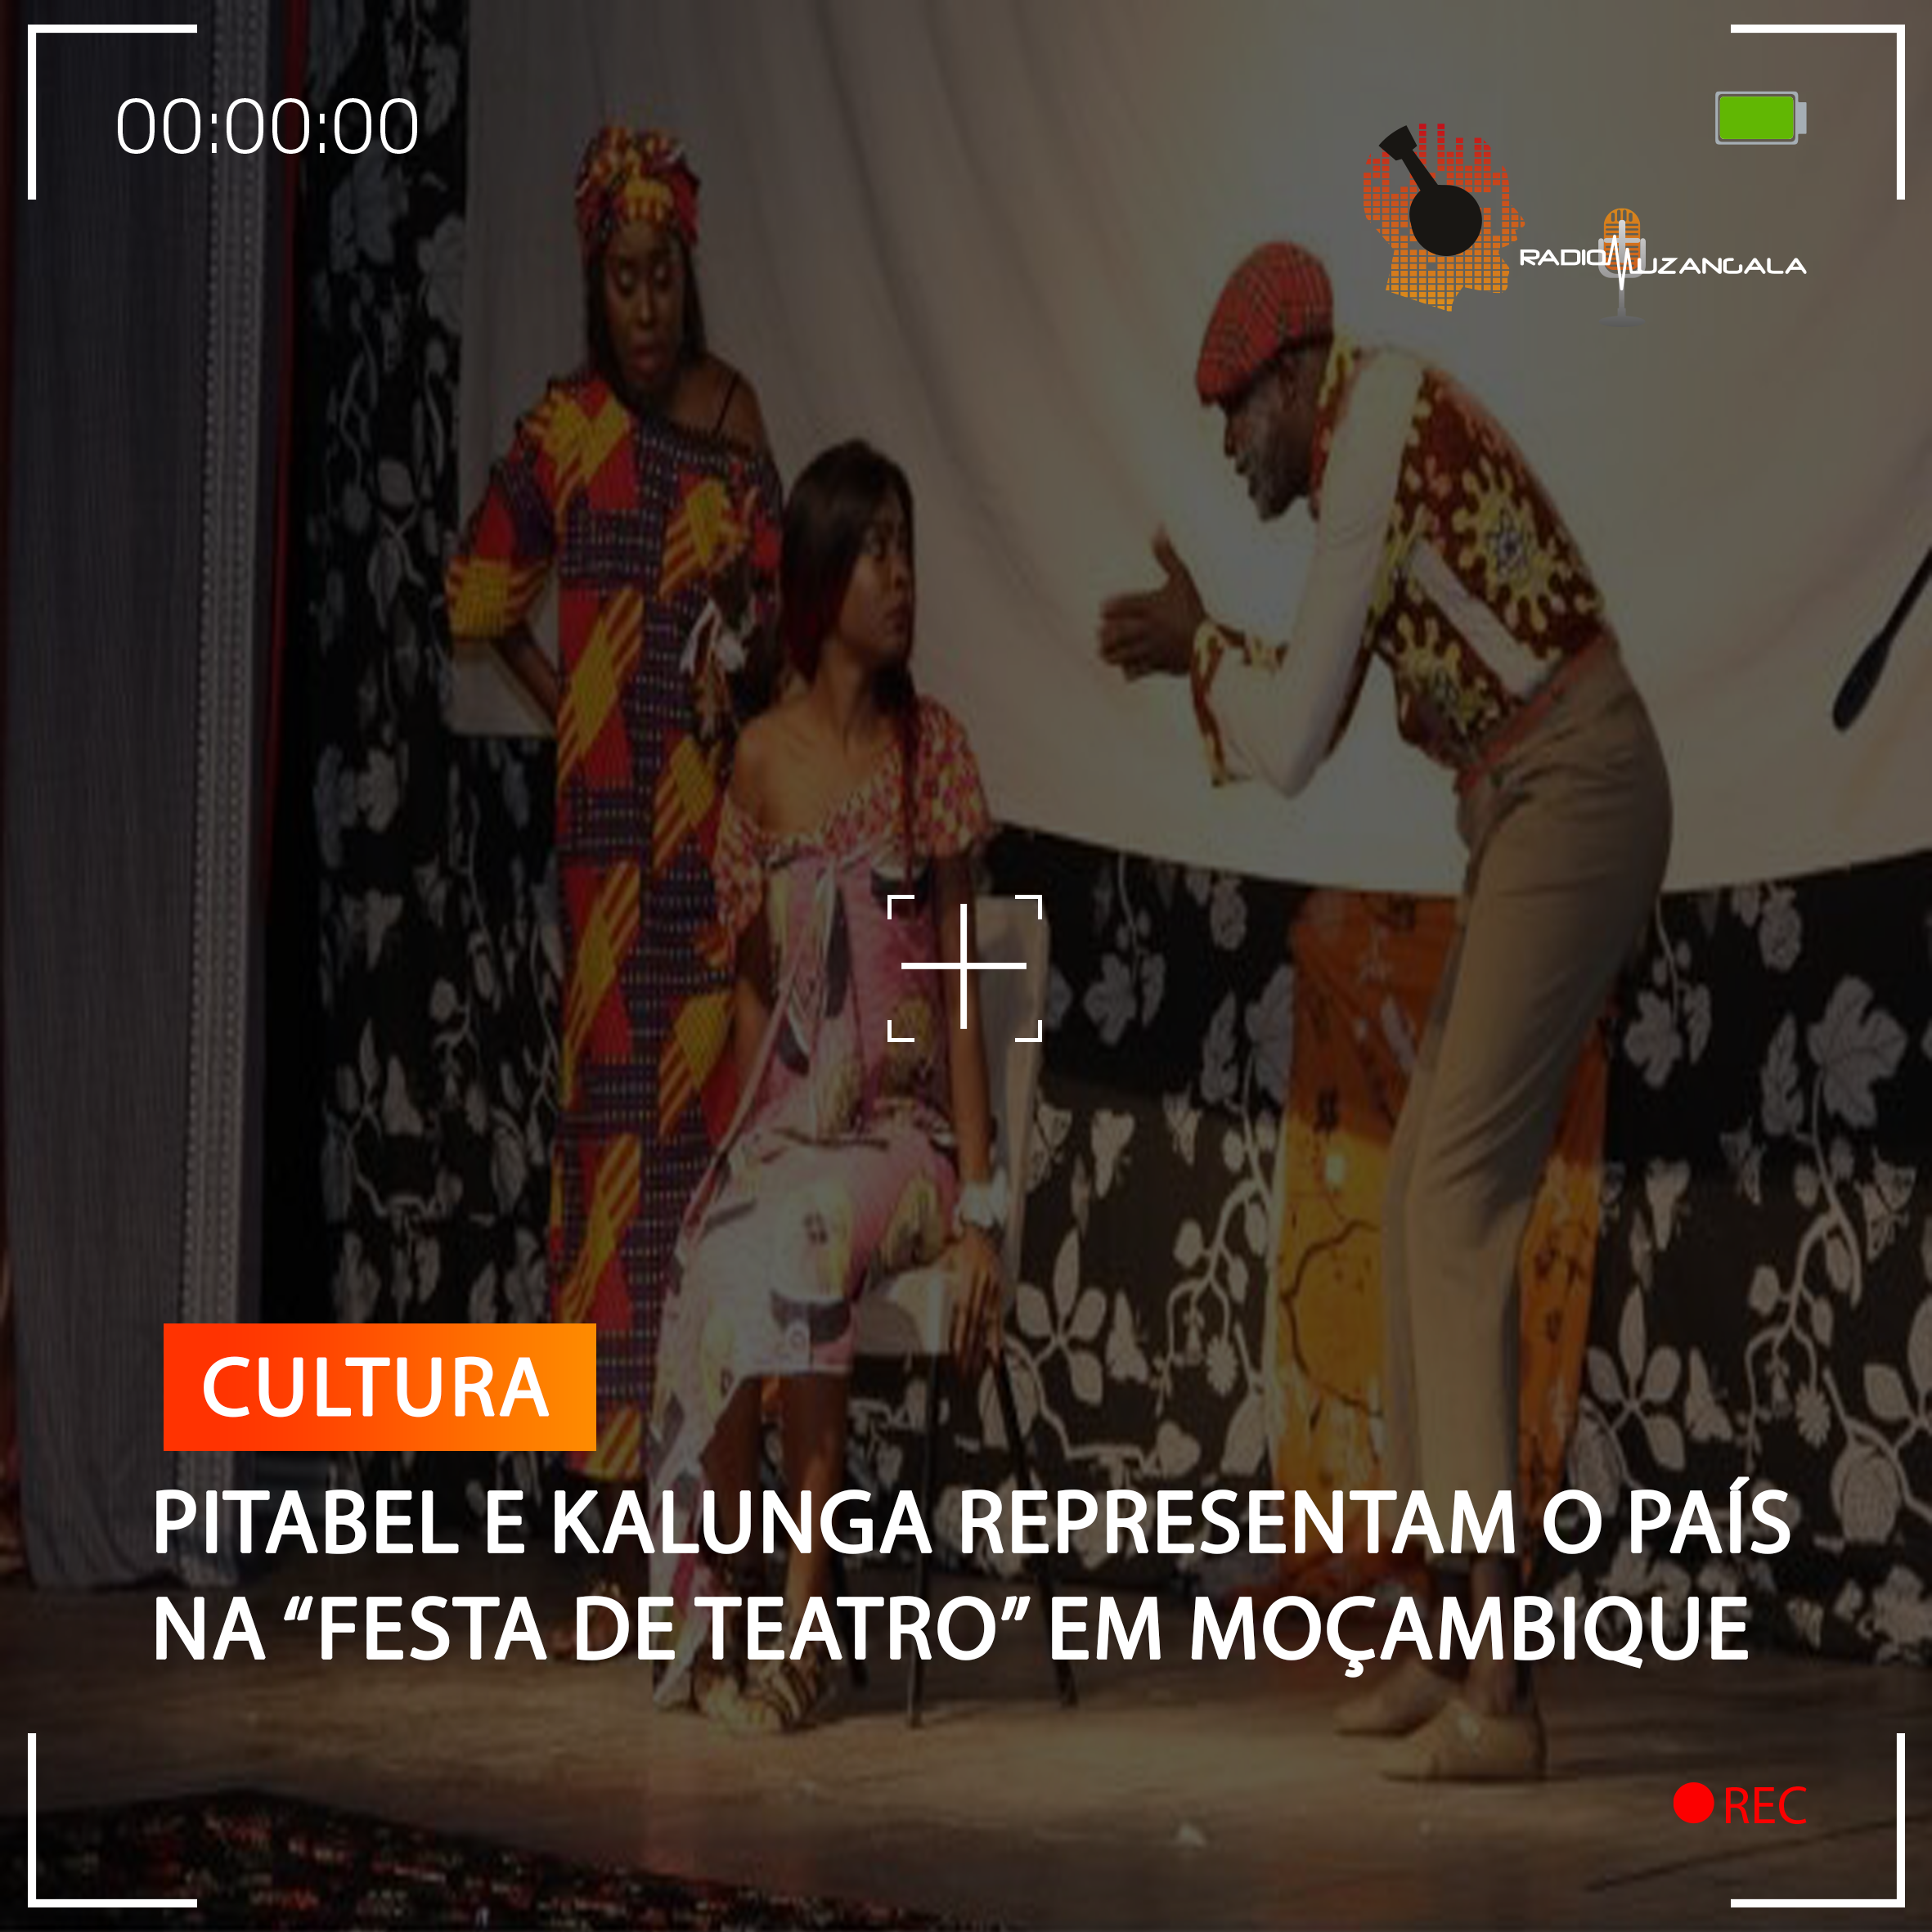  Pitabel e Kalunga representam o país na “Festa de Teatro” em Moçambique